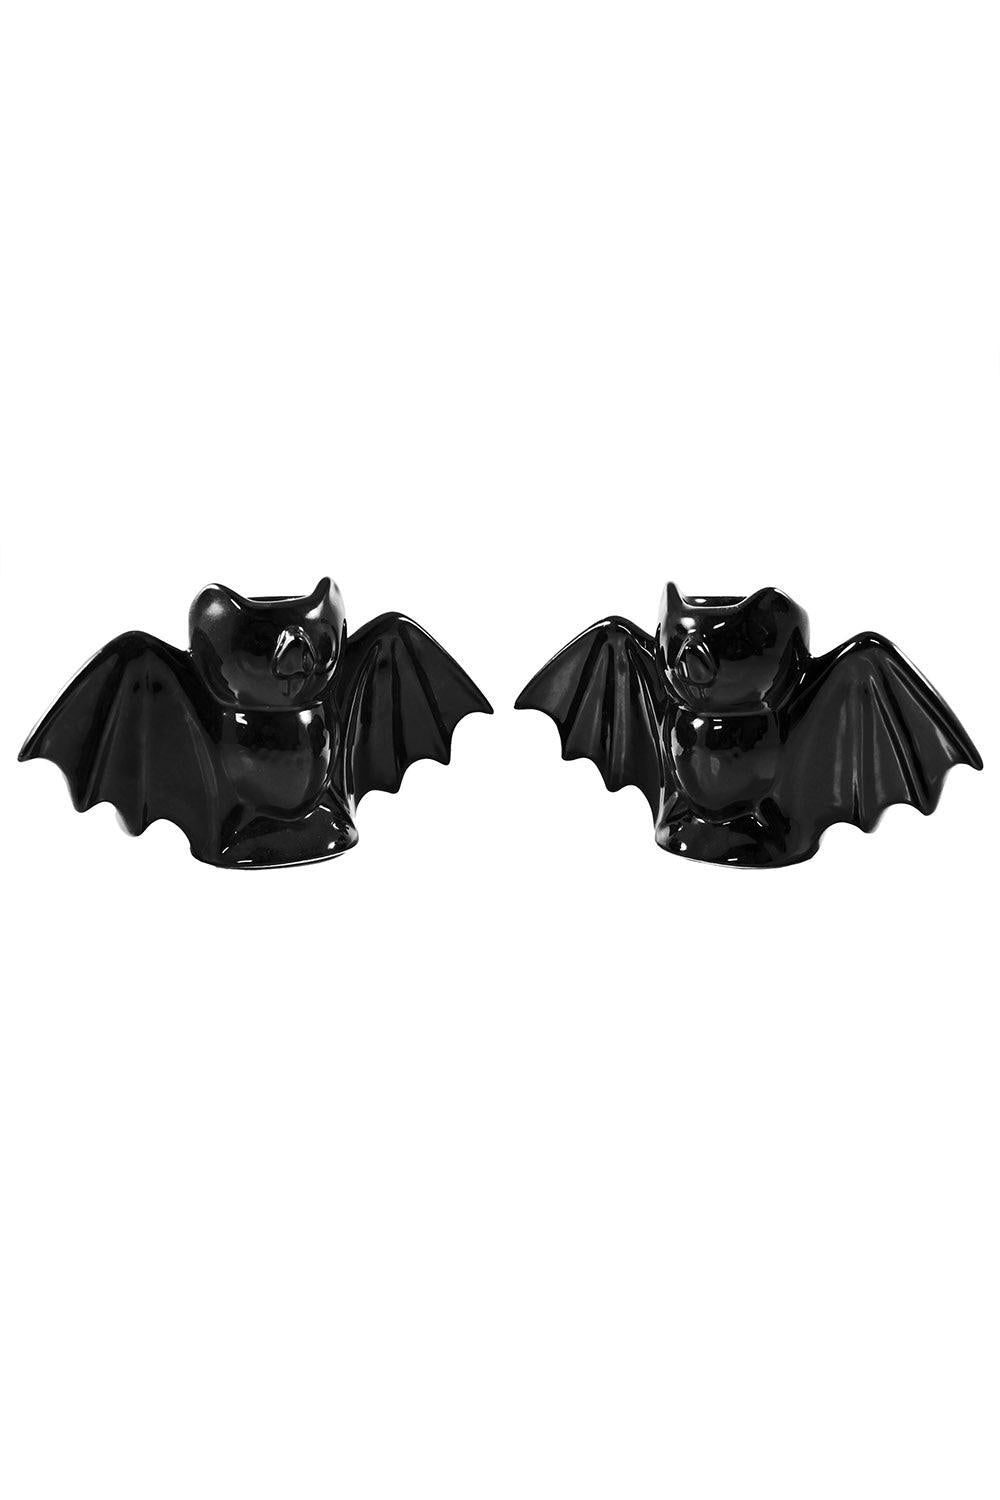 Sourpuss Bat Candlestick Holders [Black] - VampireFreaks